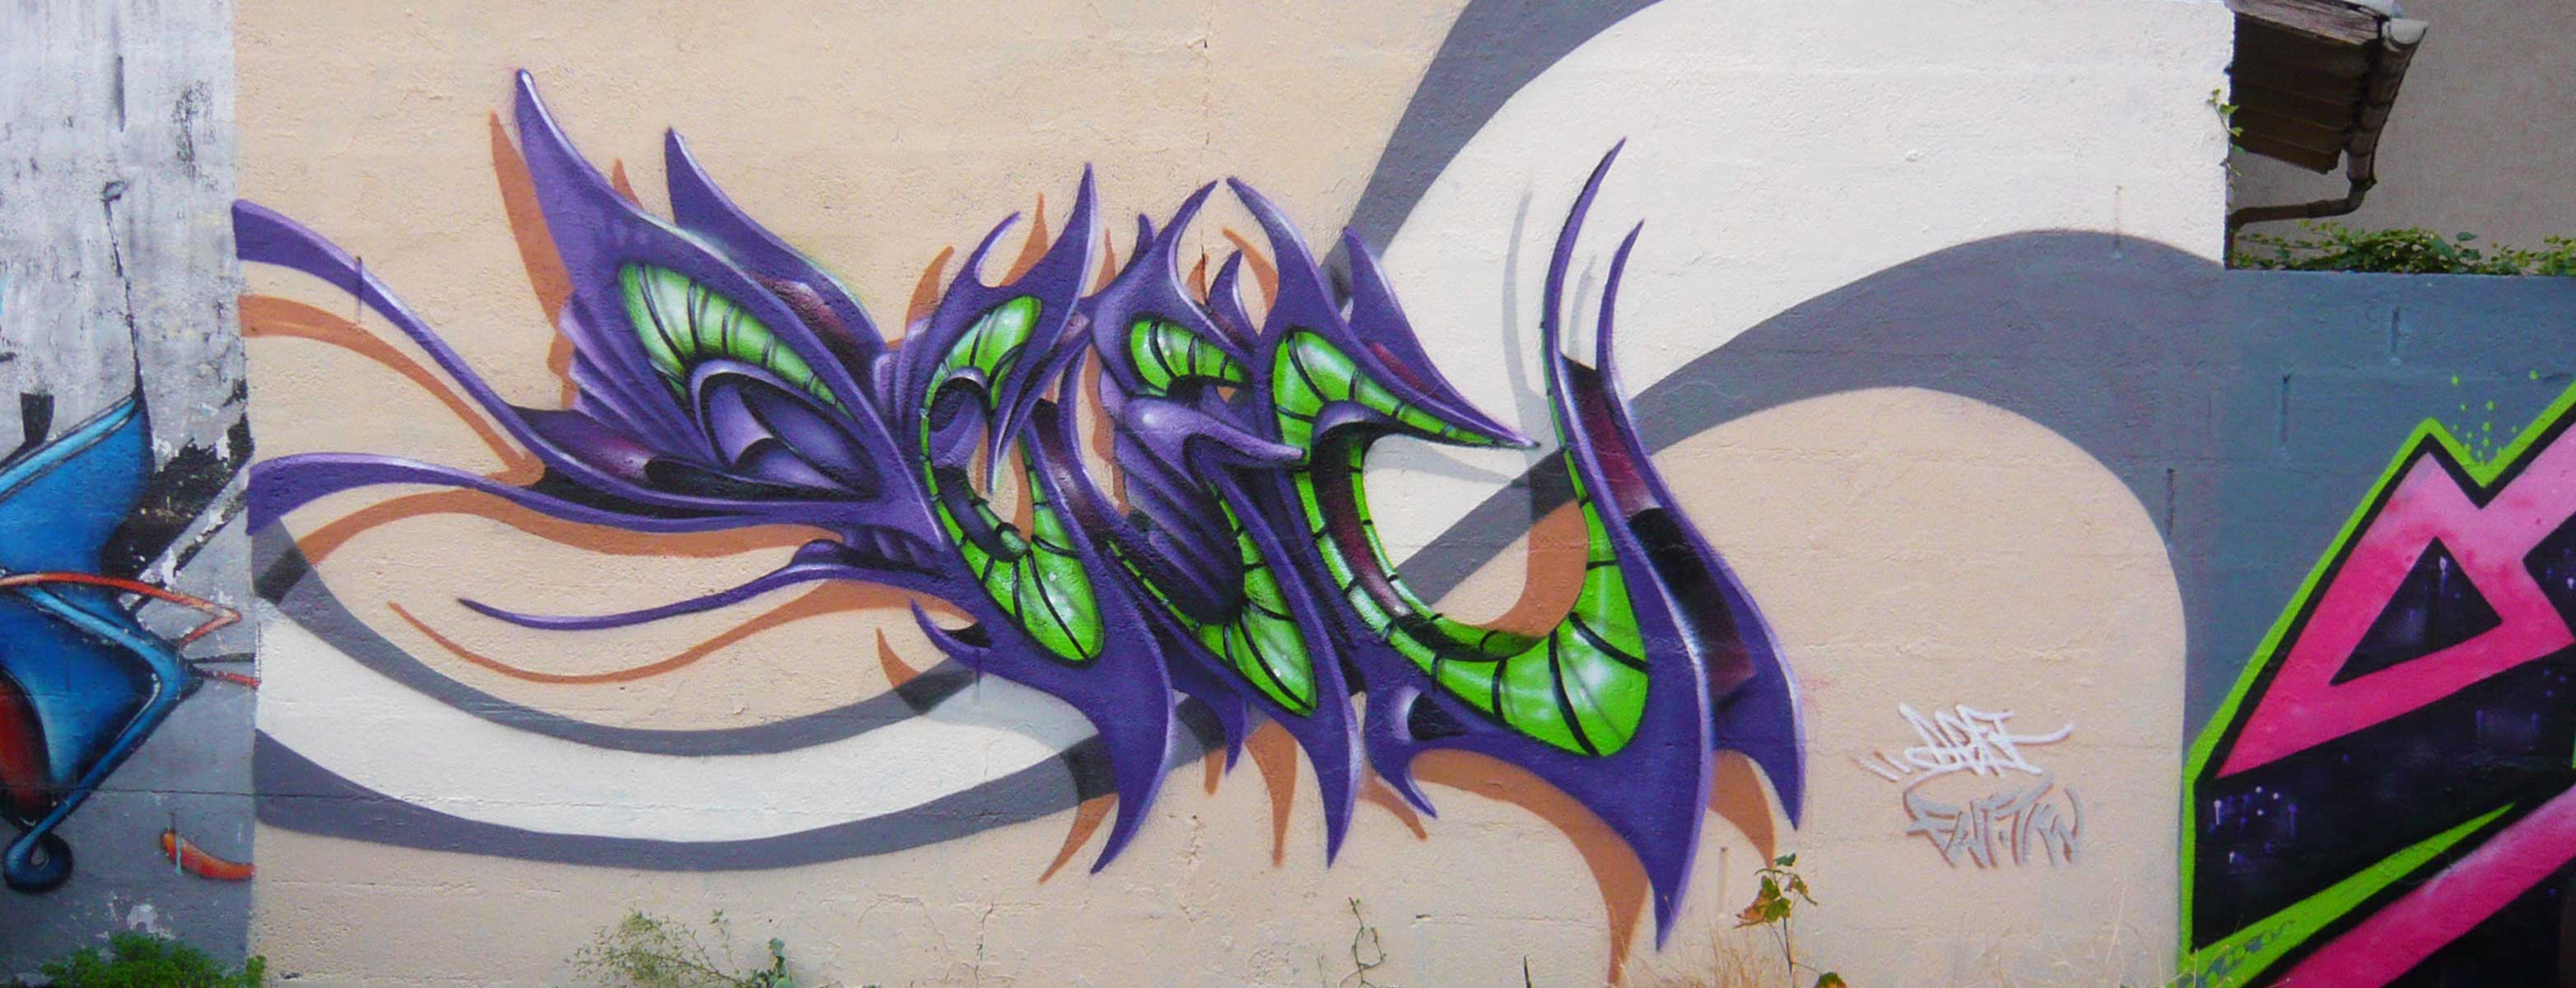 deft_graffiti_2013_1